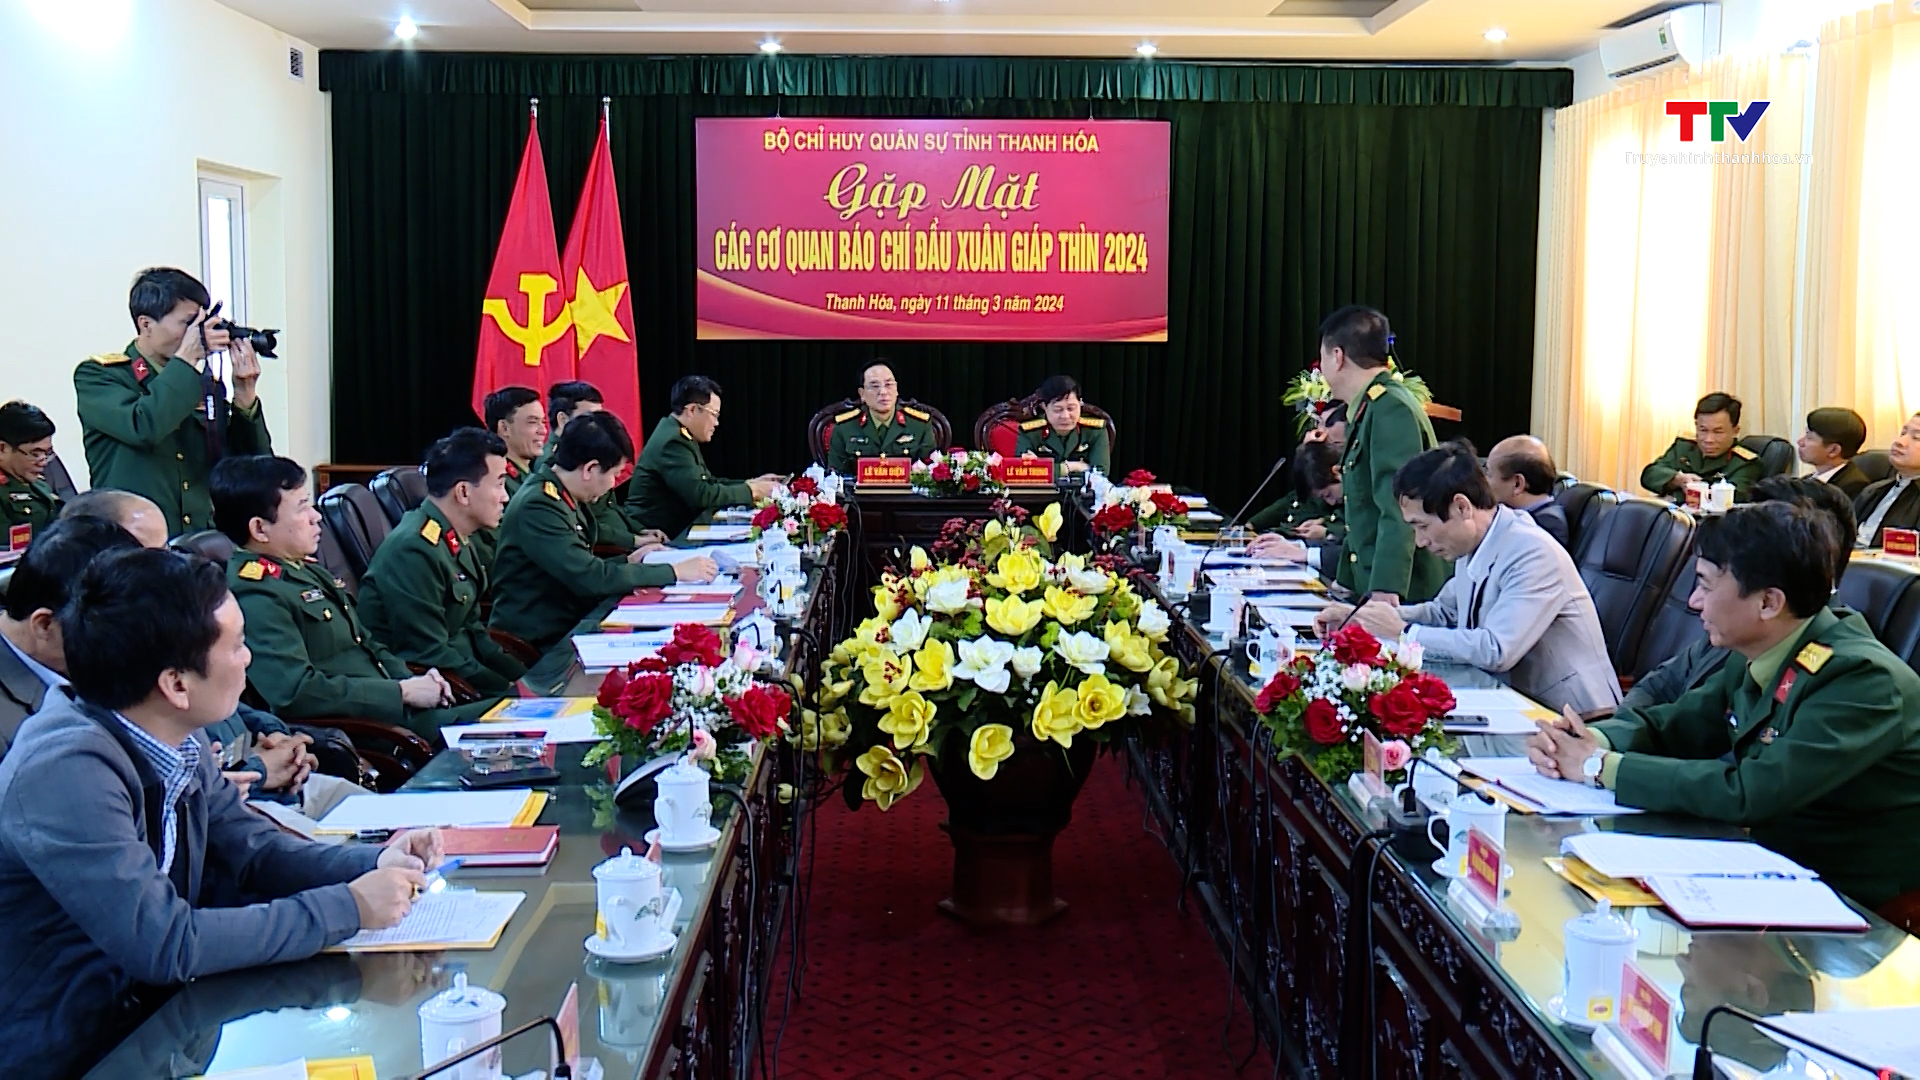 Bộ Chỉ huy Quân sự tỉnh gặp mặt Báo chí đầu xuân Giáp Thìn 2024- Ảnh 3.